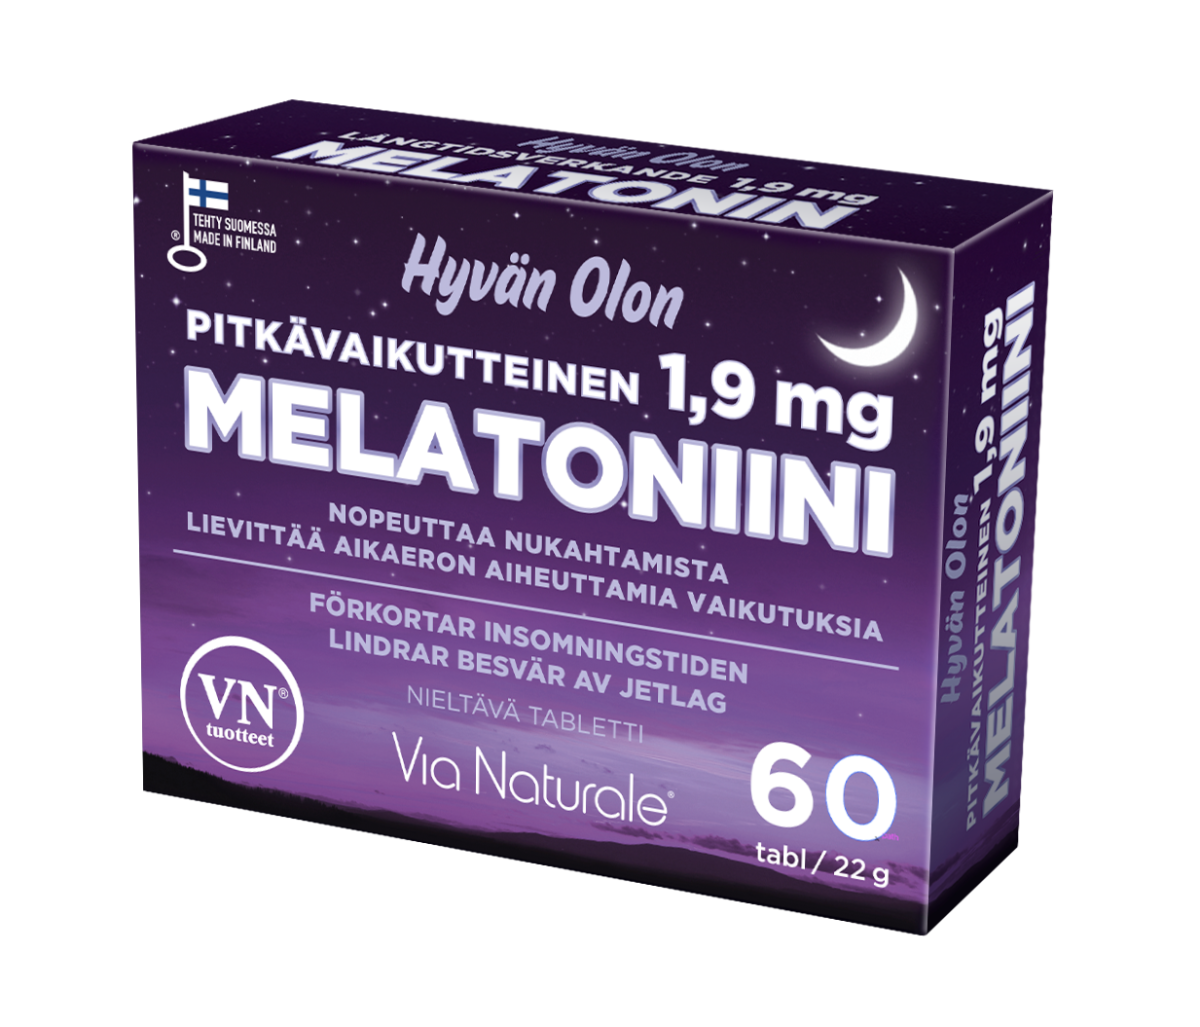 Hyvän Olon Pitkävaikutteinen Melatoniini 1,9 mg-Via Naturale-Hyvinvoinnin Tavaratalo